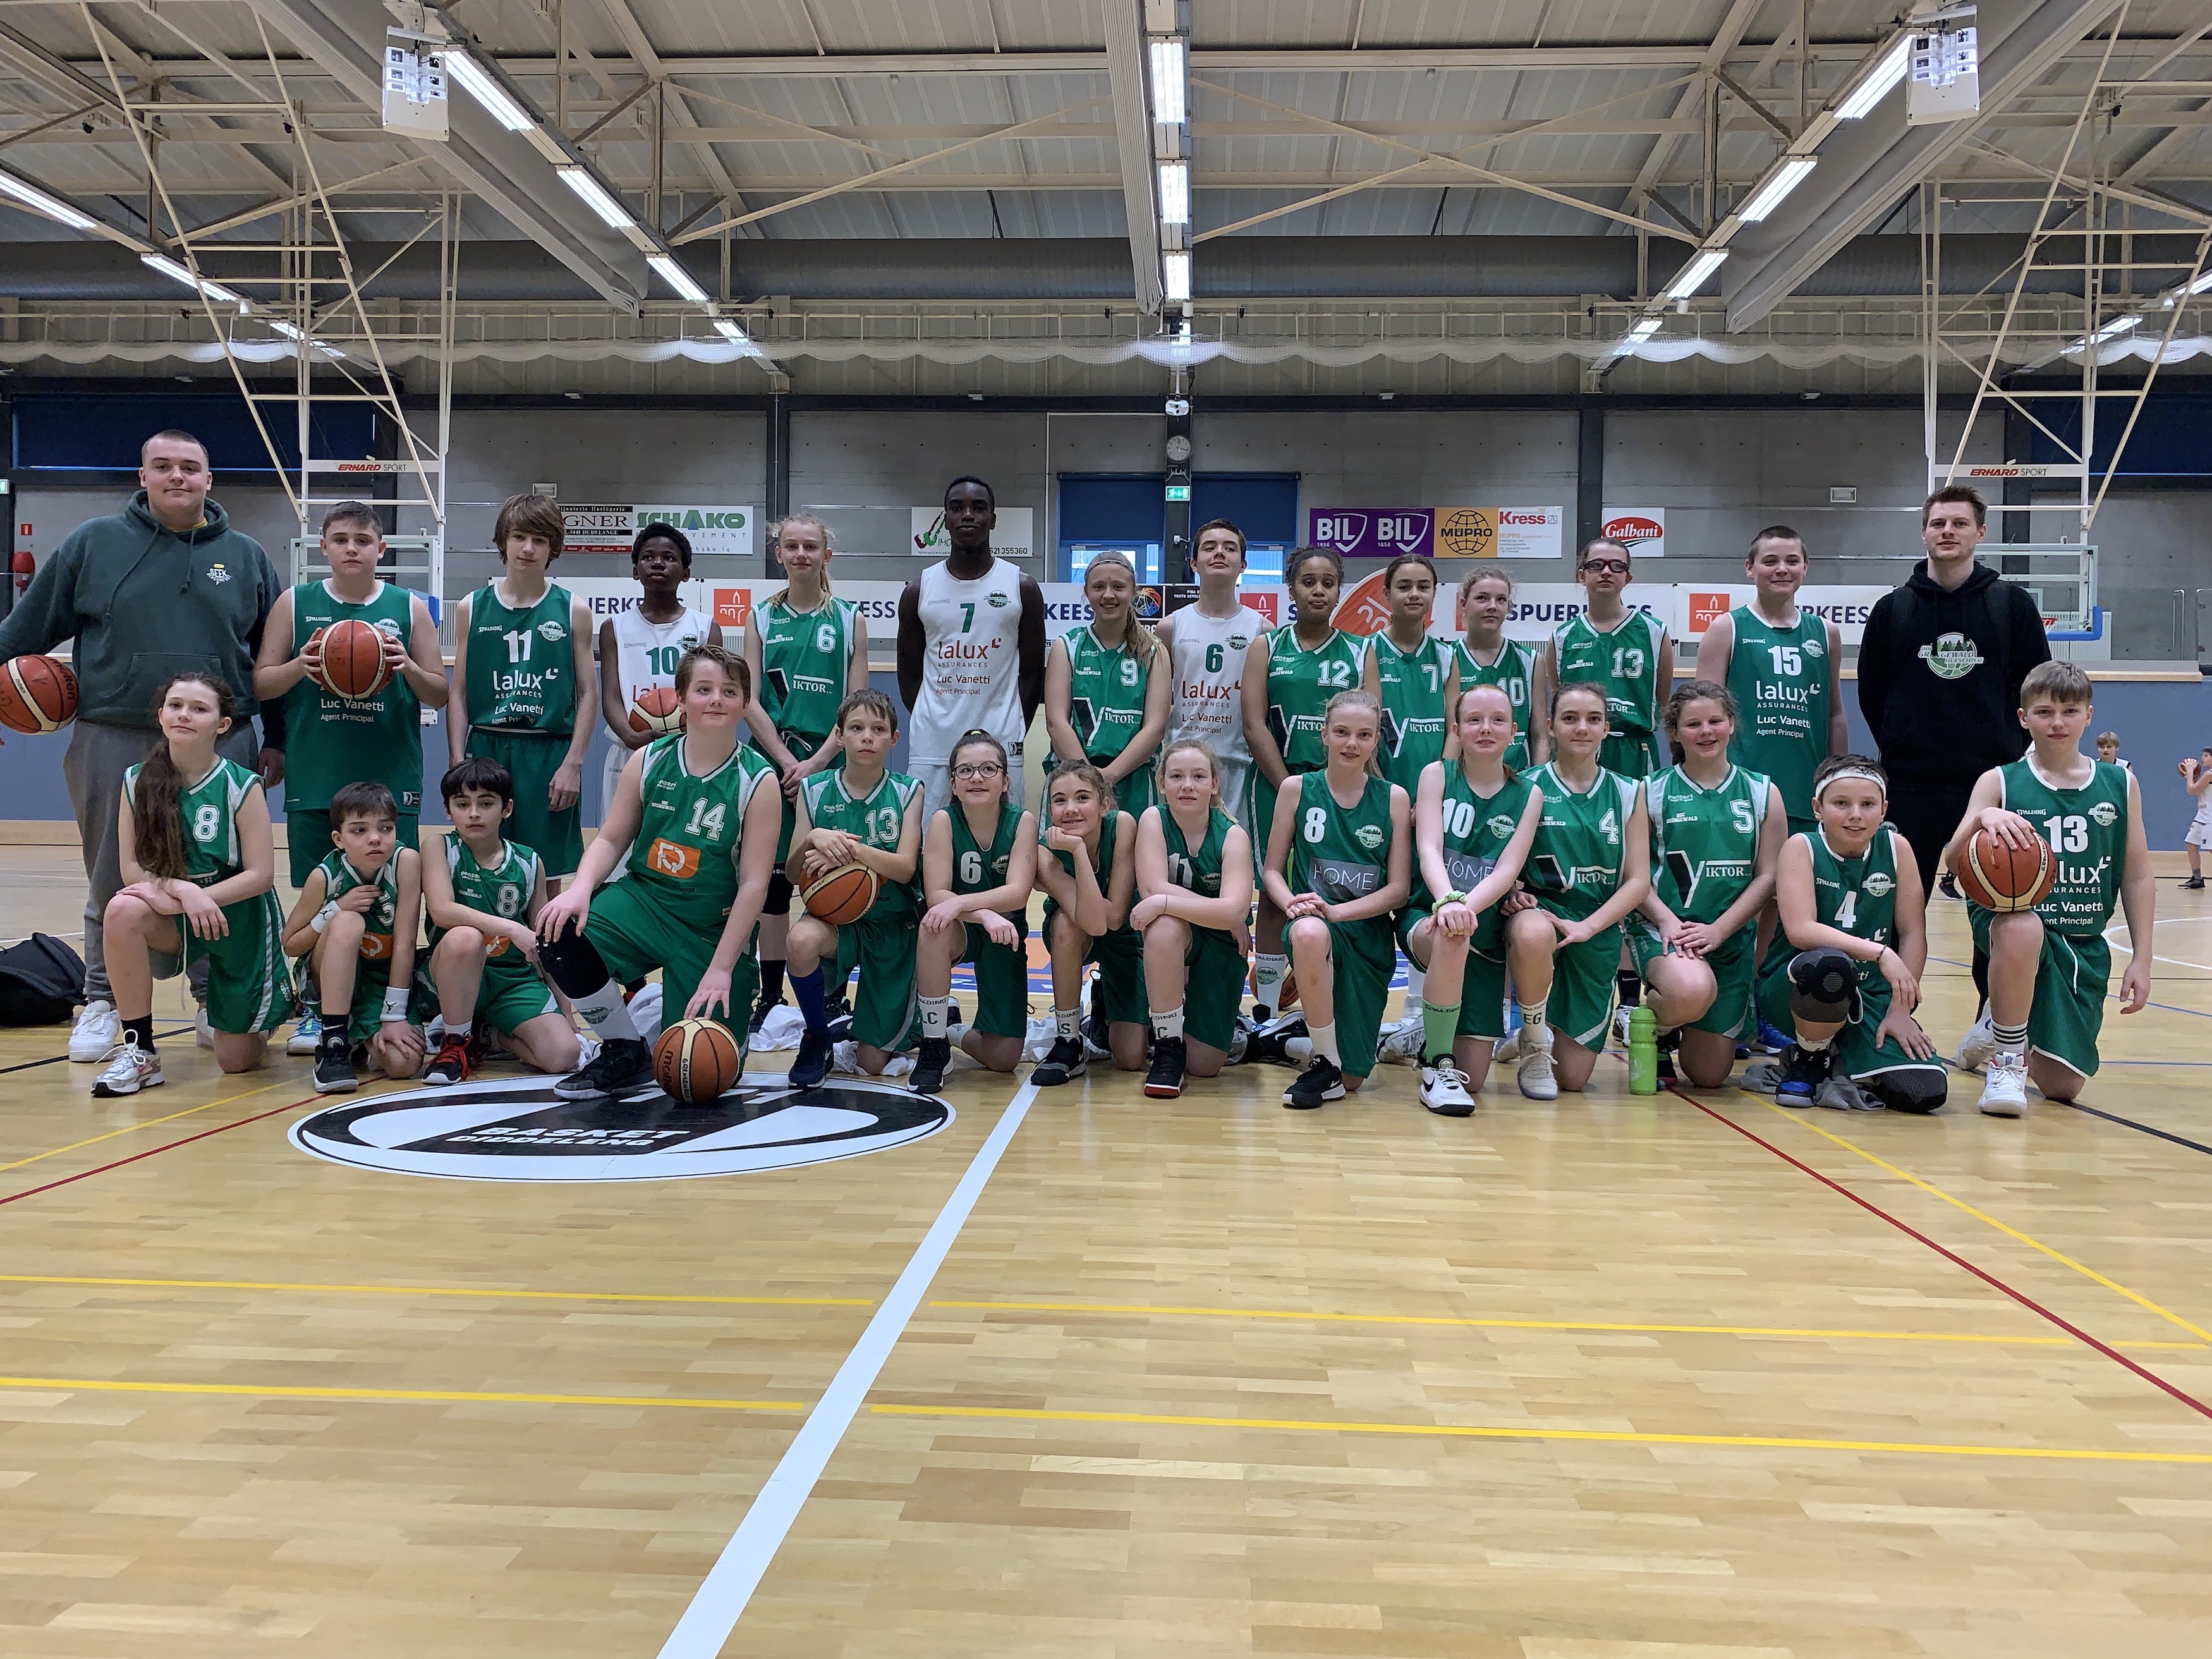 Journée national du basket with 6 Greens teams